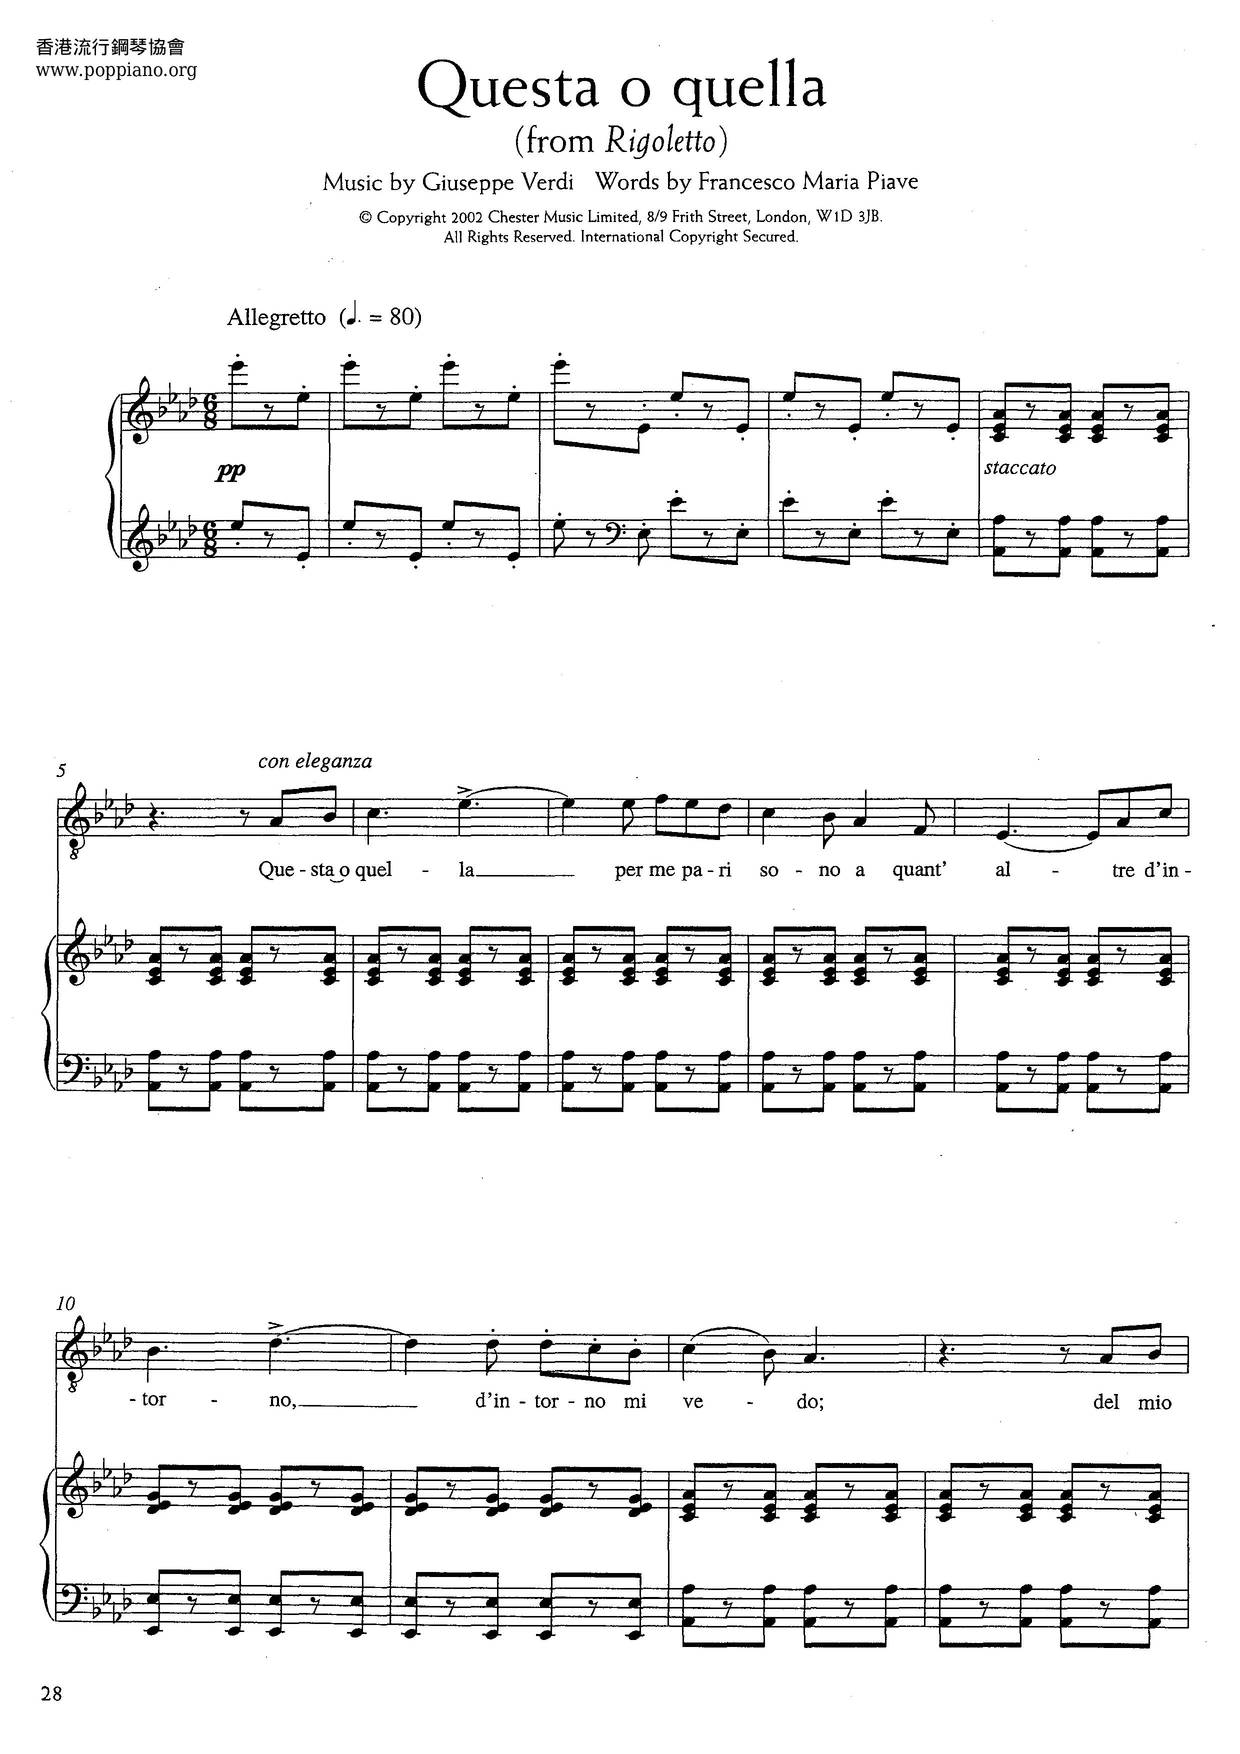 Questa O Quella From Rigoletto (Verdi)ピアノ譜